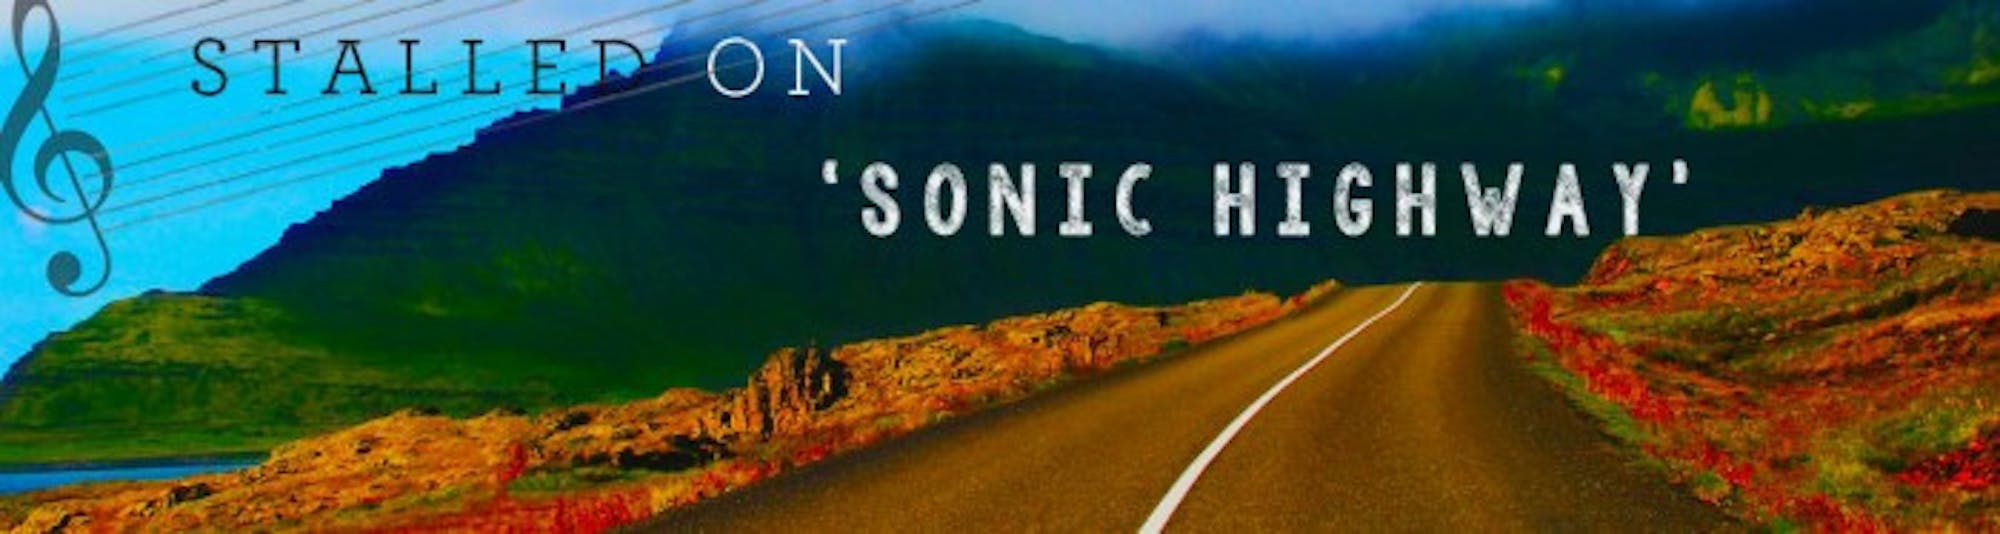 sonic-highway-web